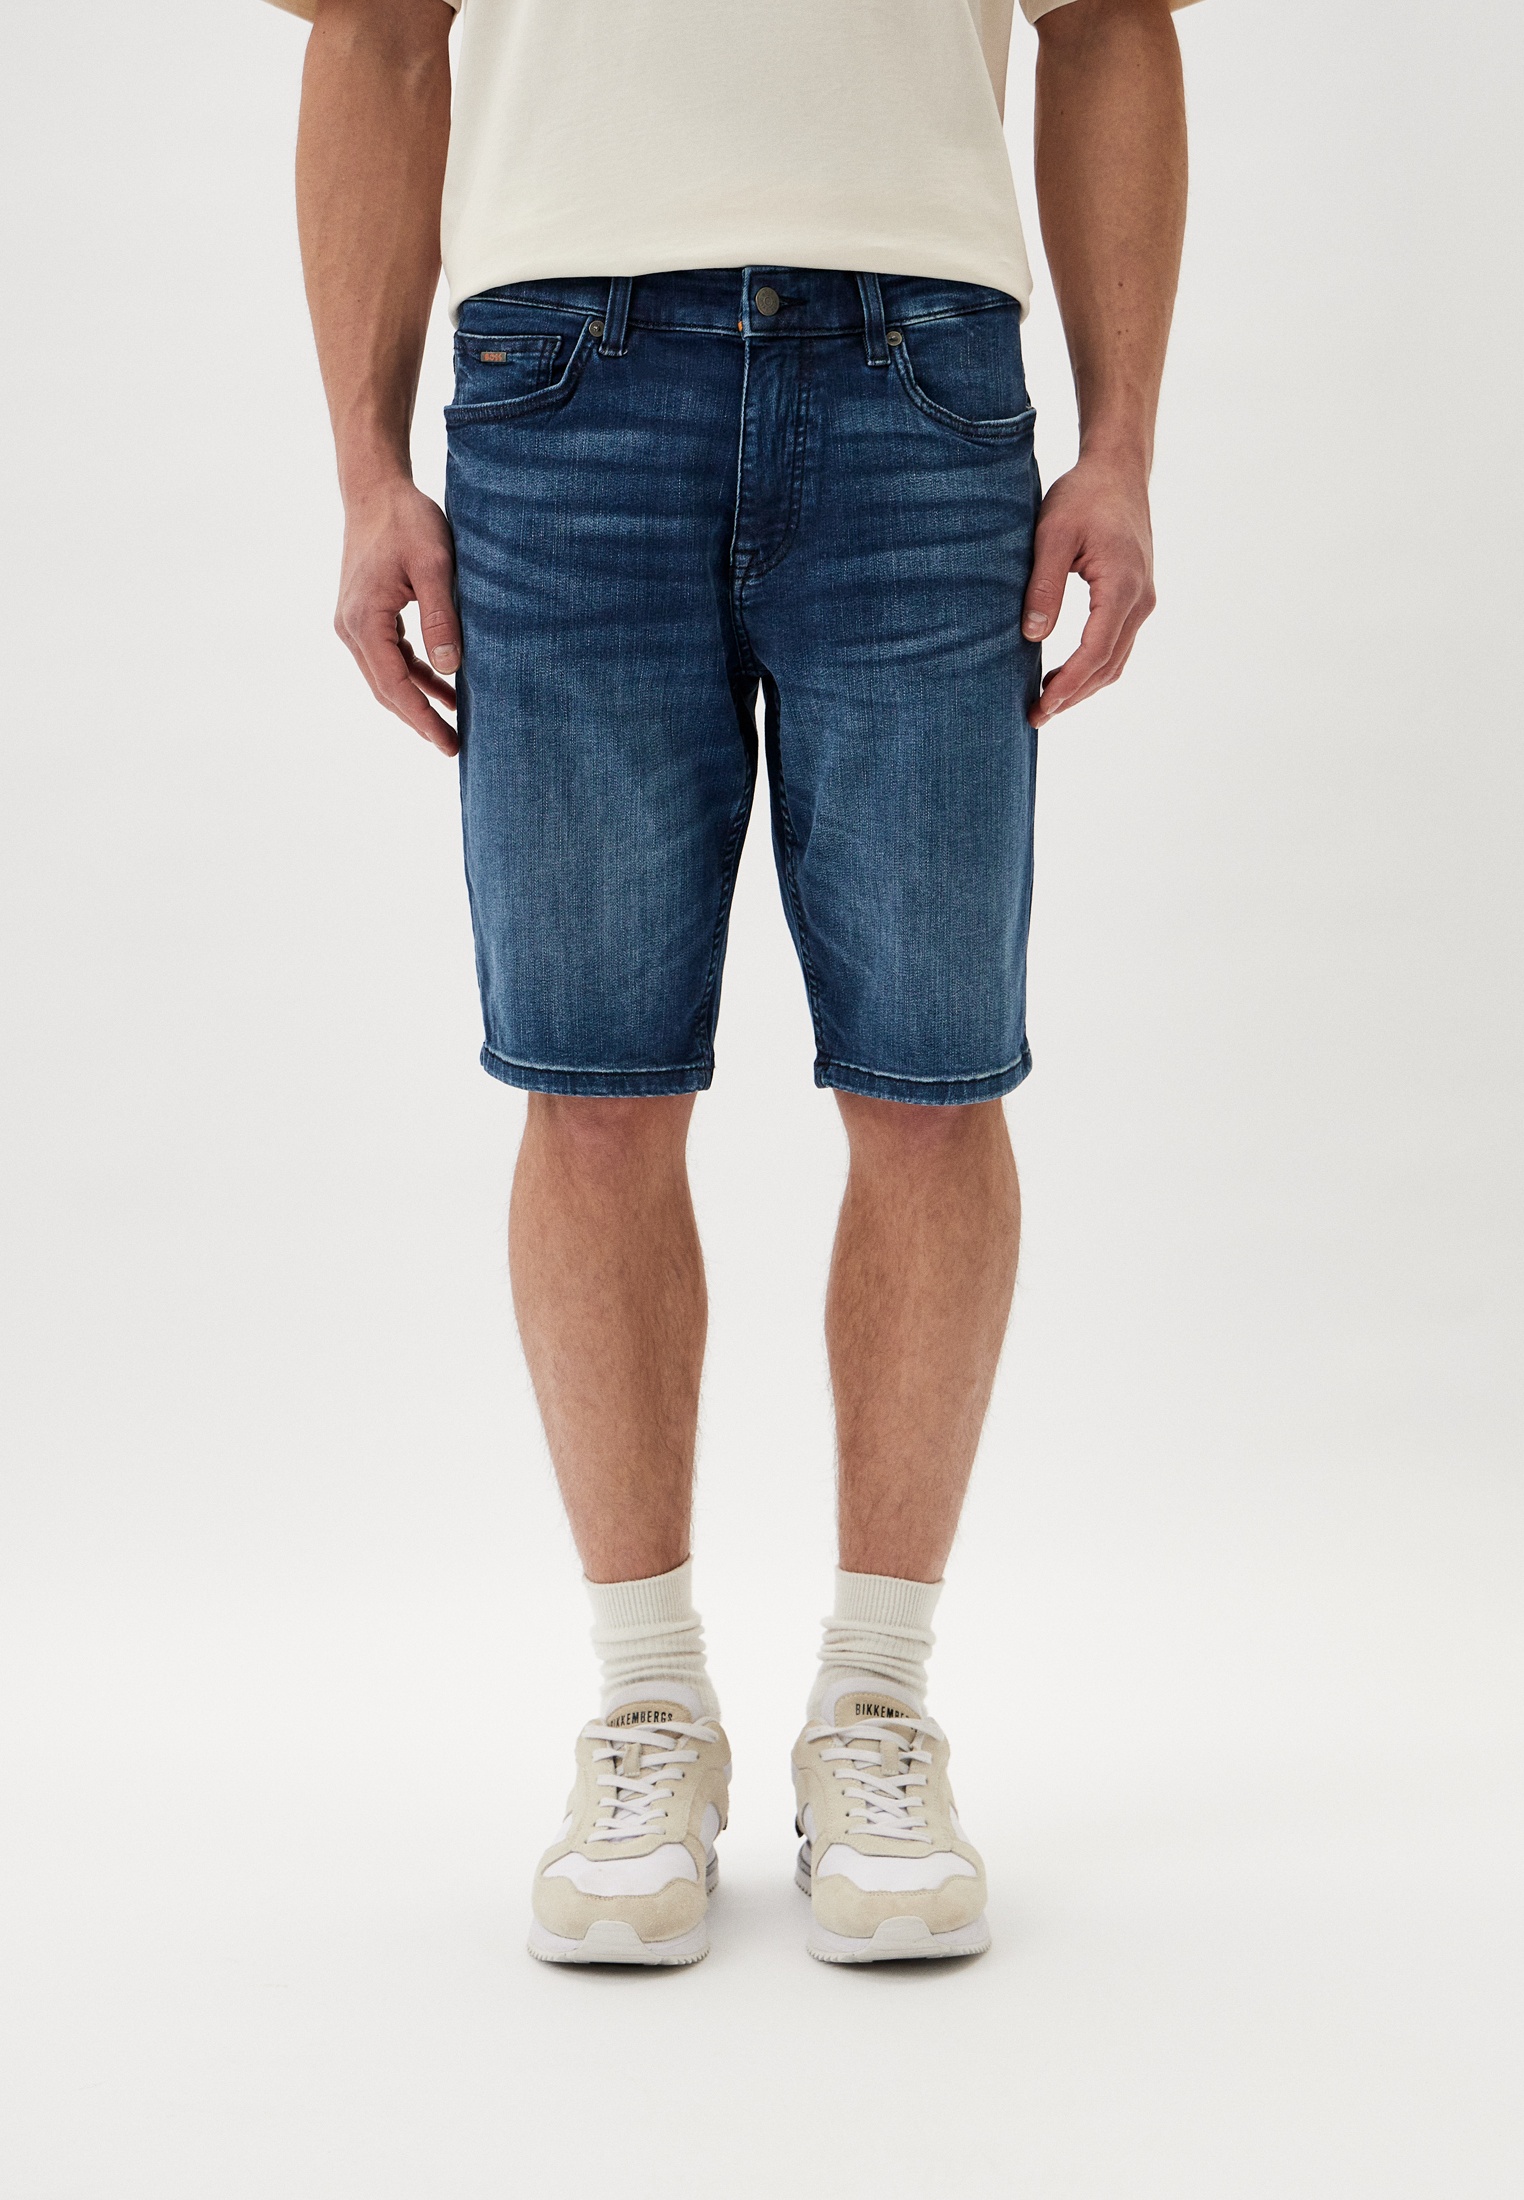 Мужские джинсовые шорты Boss (Босс) 50513494: изображение 1